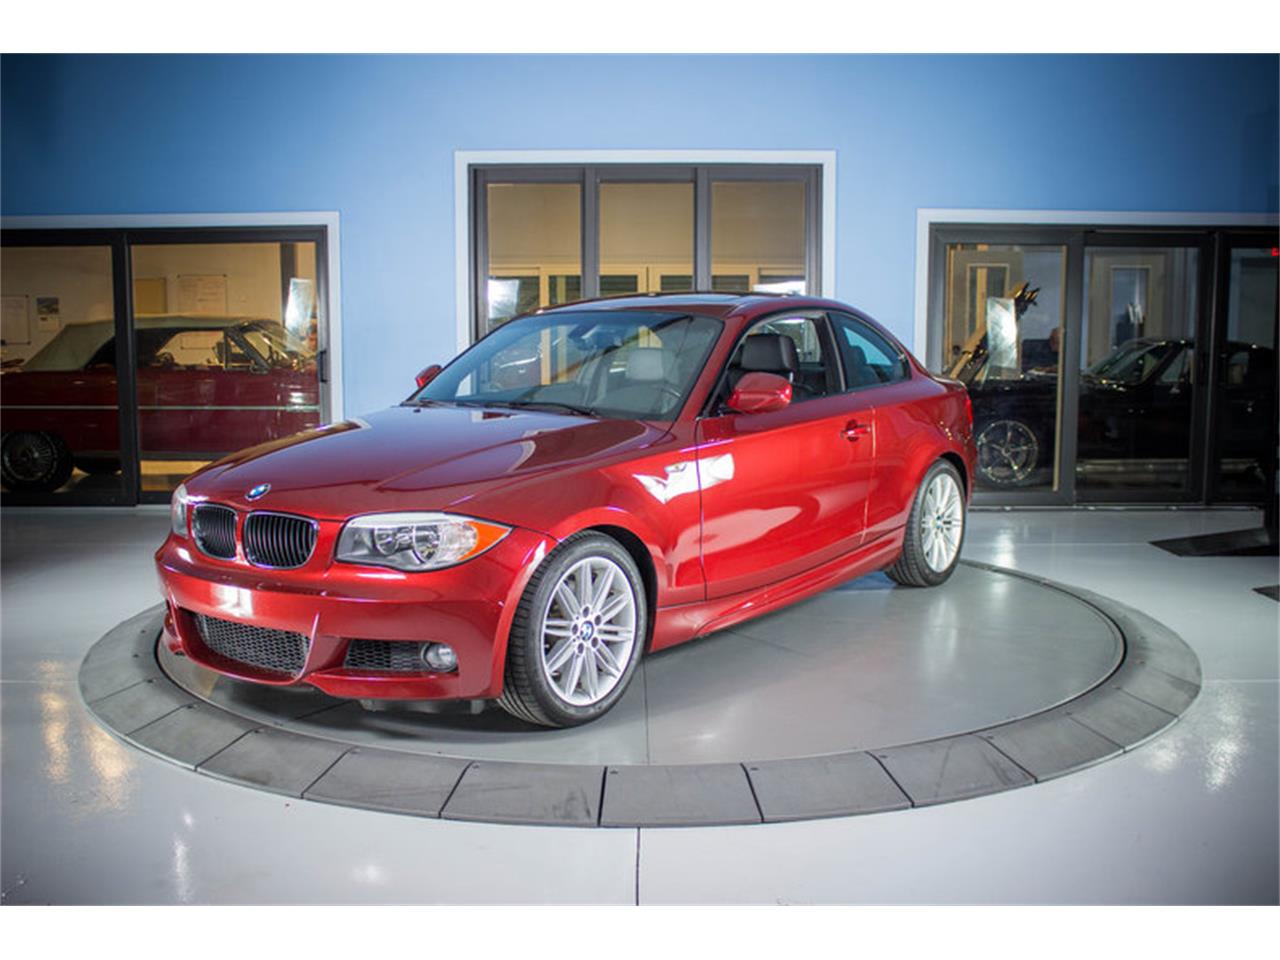 2013 BMW 128i for Sale | ClassicCars.com | CC-1064295